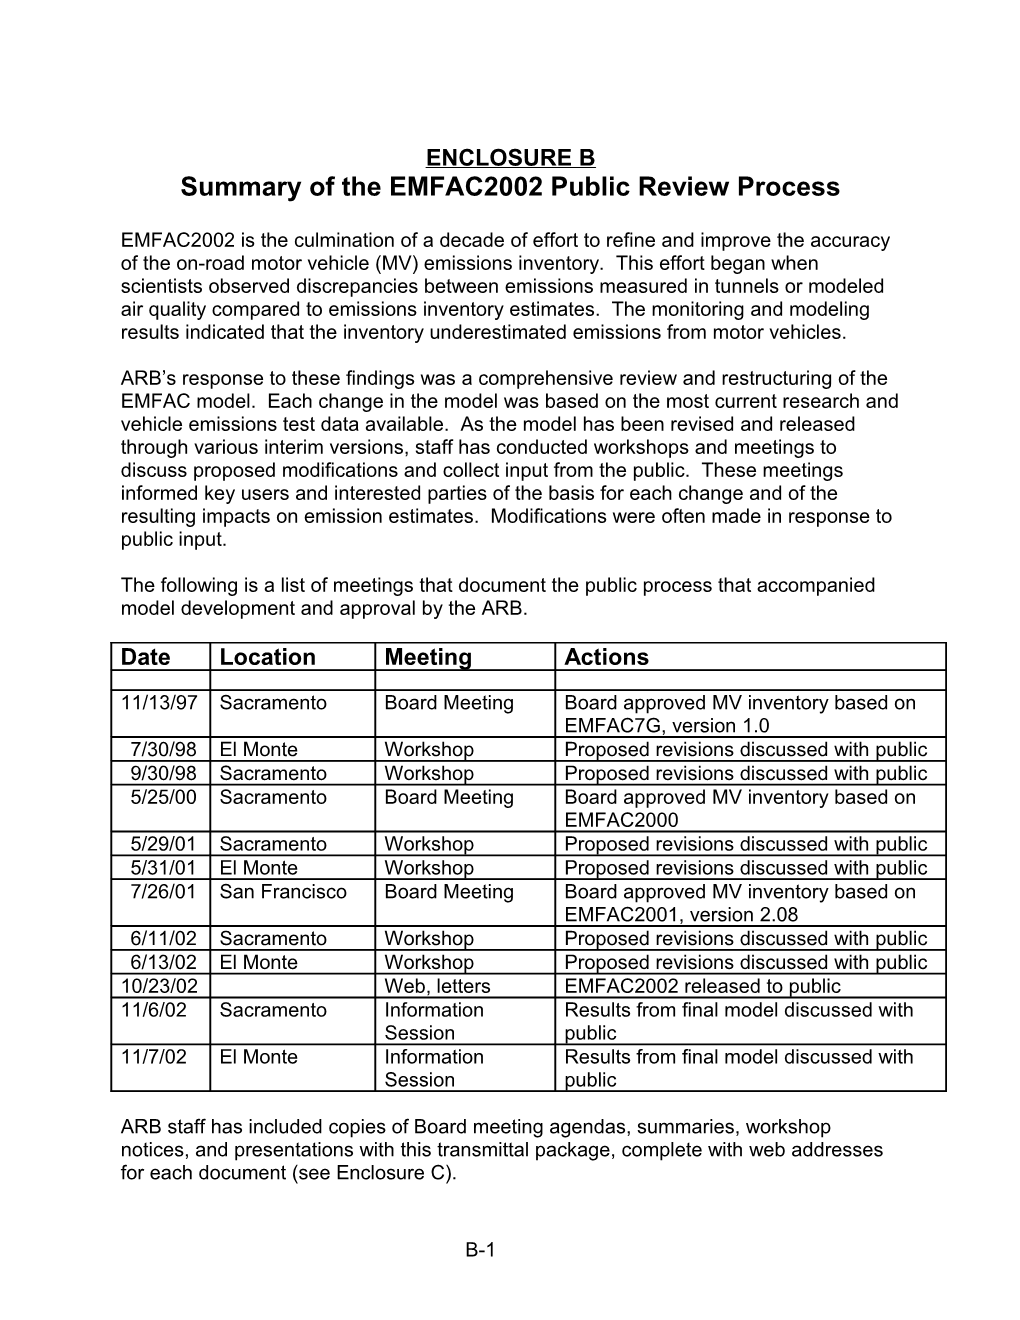 Enclosure B: 2002-12 Public Review Process of EMFAC2002